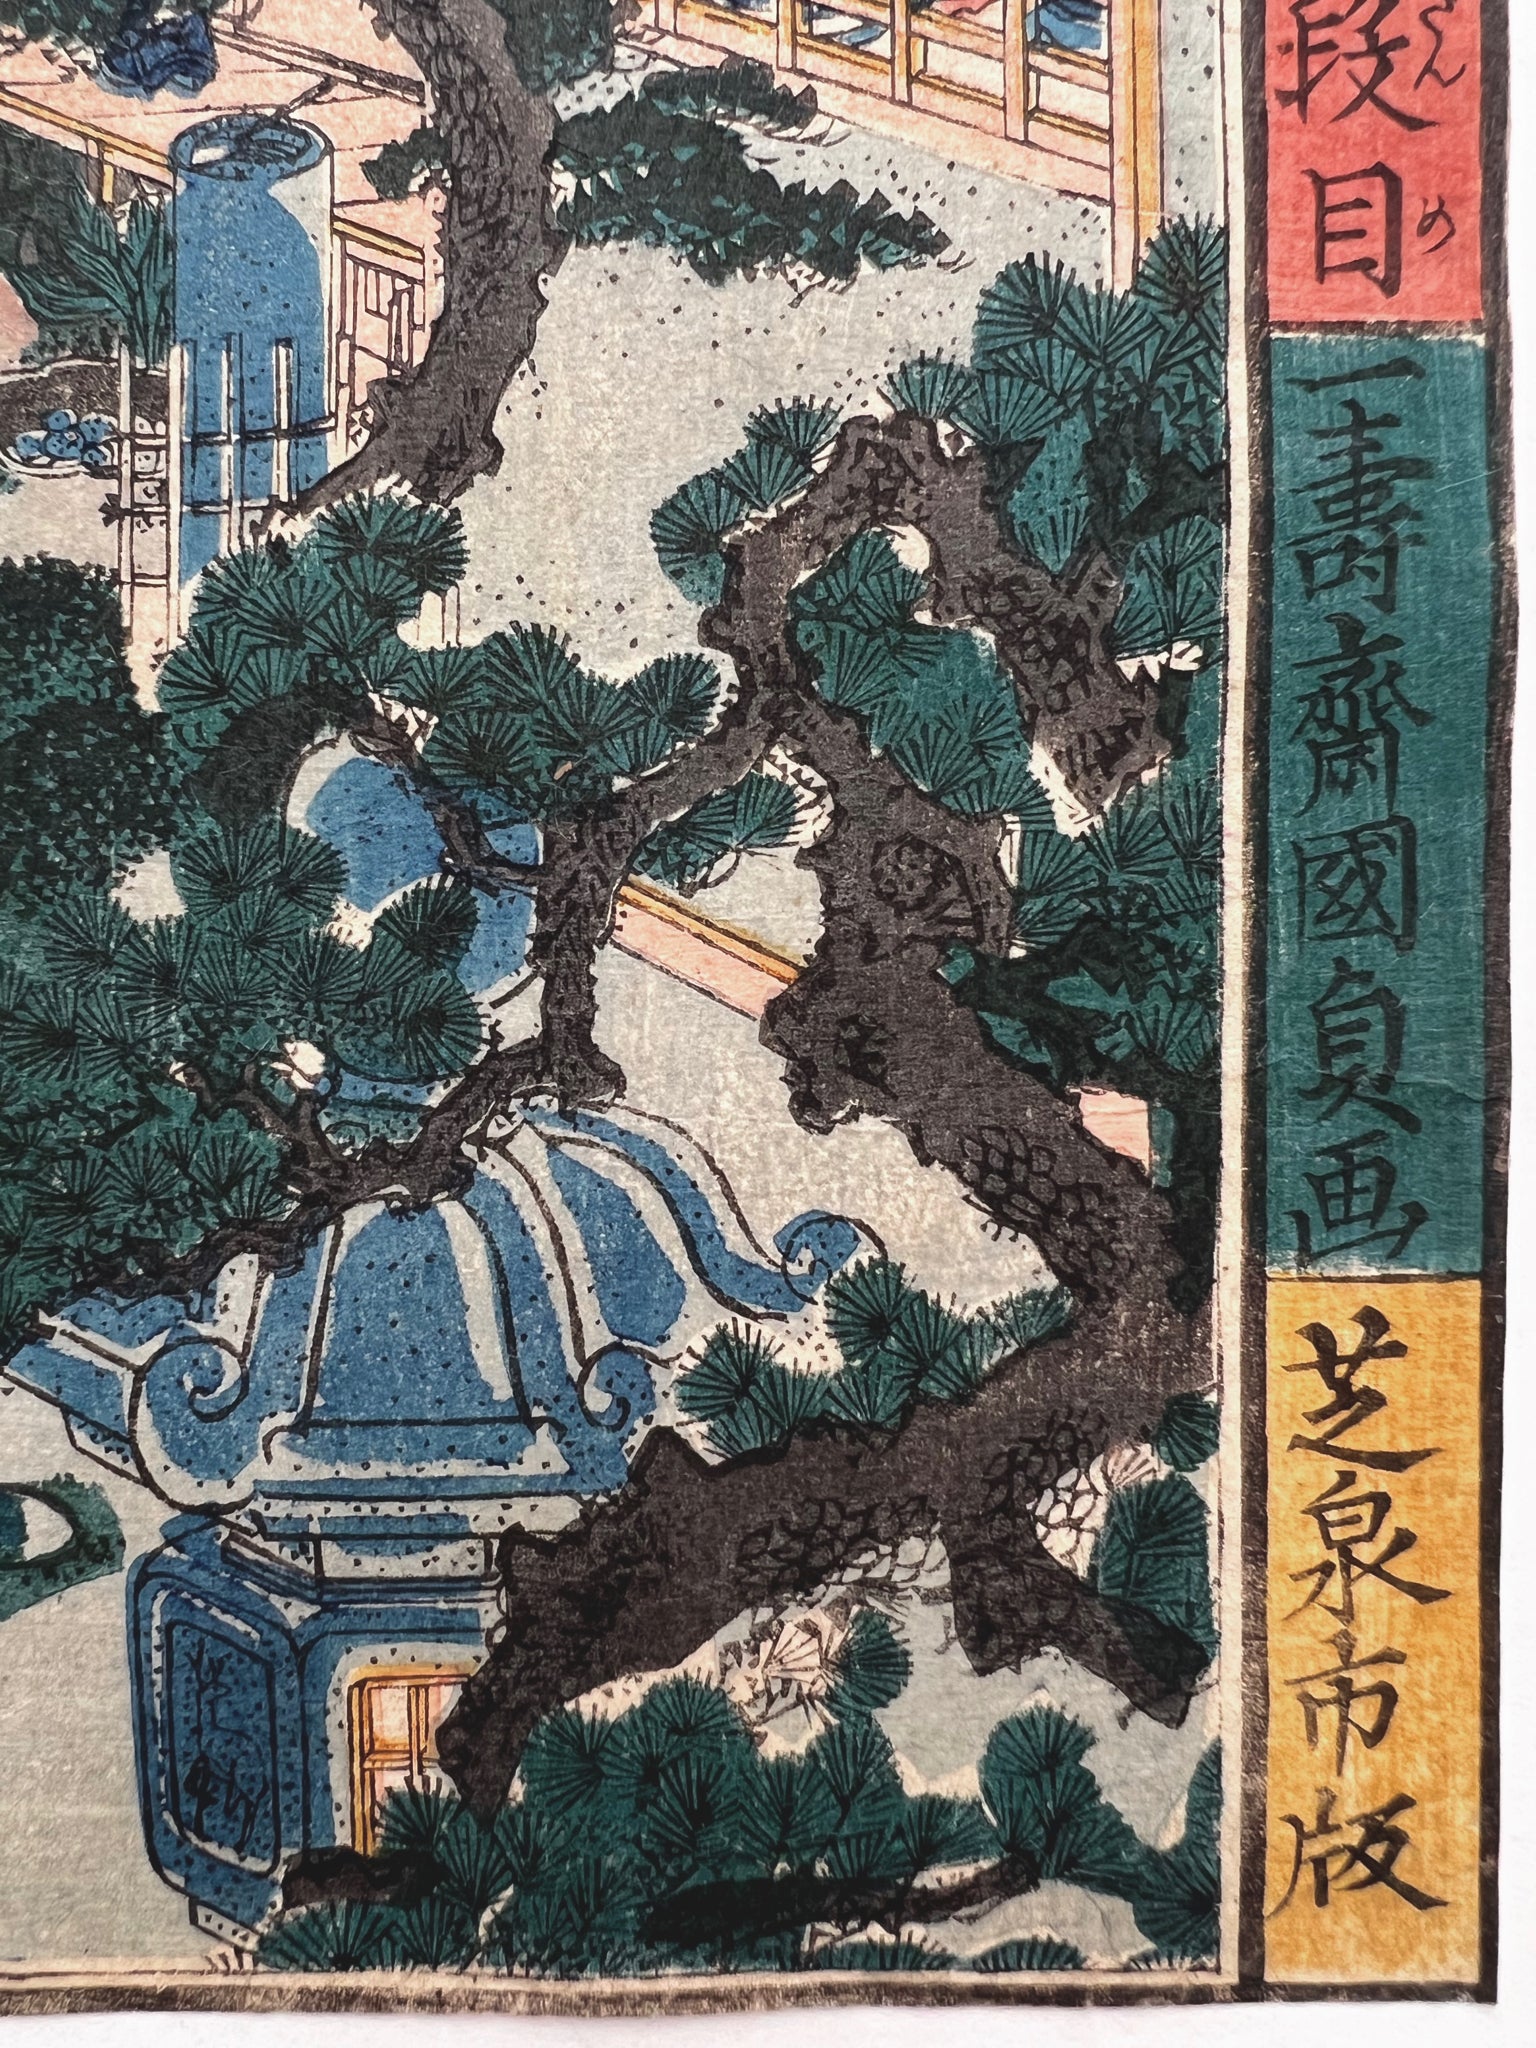 estampe japonaise rencontre discrete de samourai ronin dans la cour intérieure d'une maison de thé, texte calligraphie japonaise fond jaune